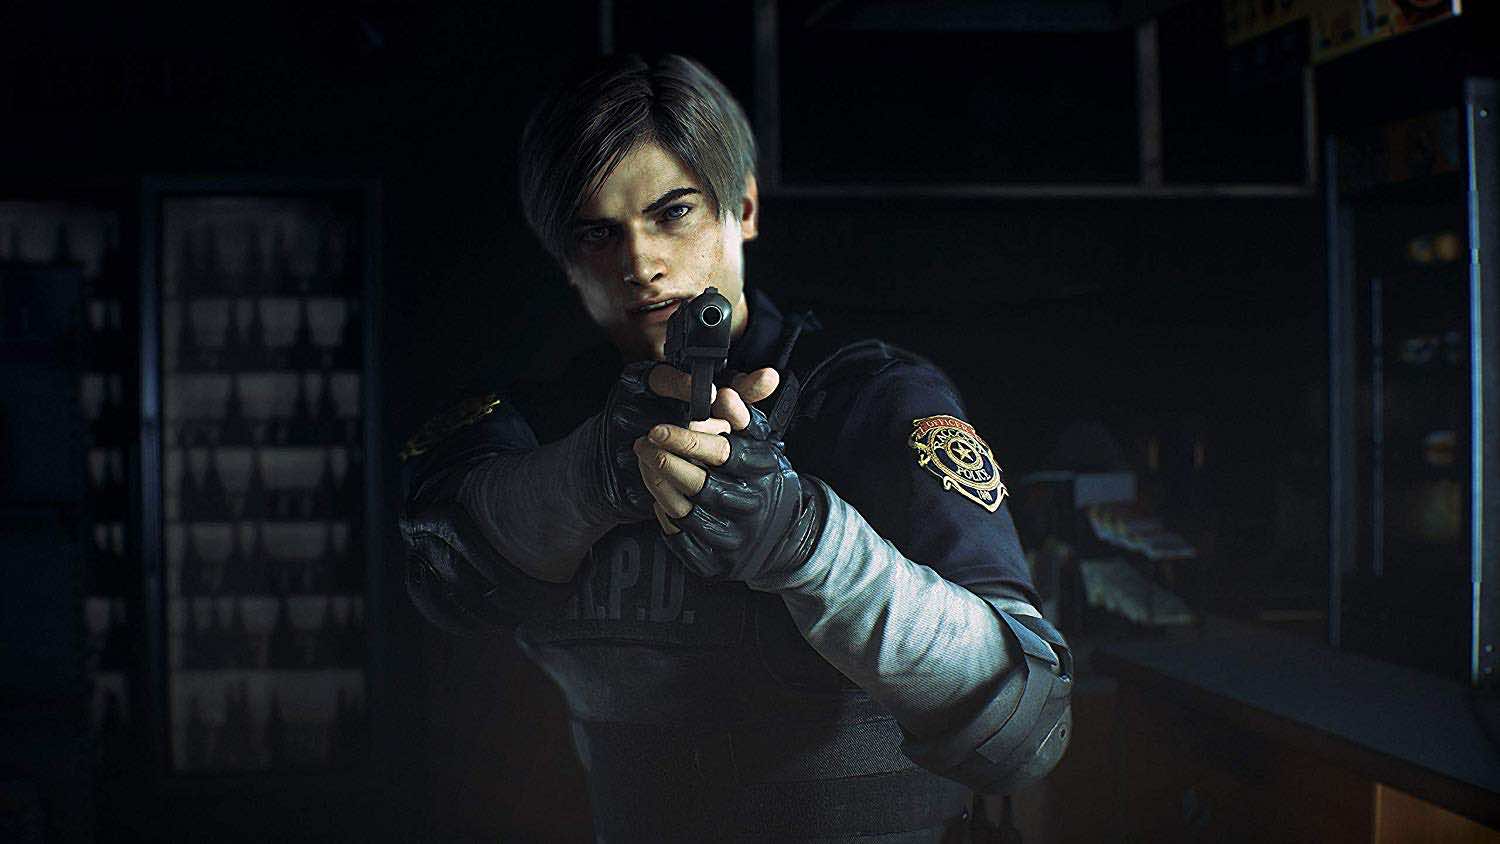 PS4 Game - Resident Evil 2 Remake - TEK-Shanghai